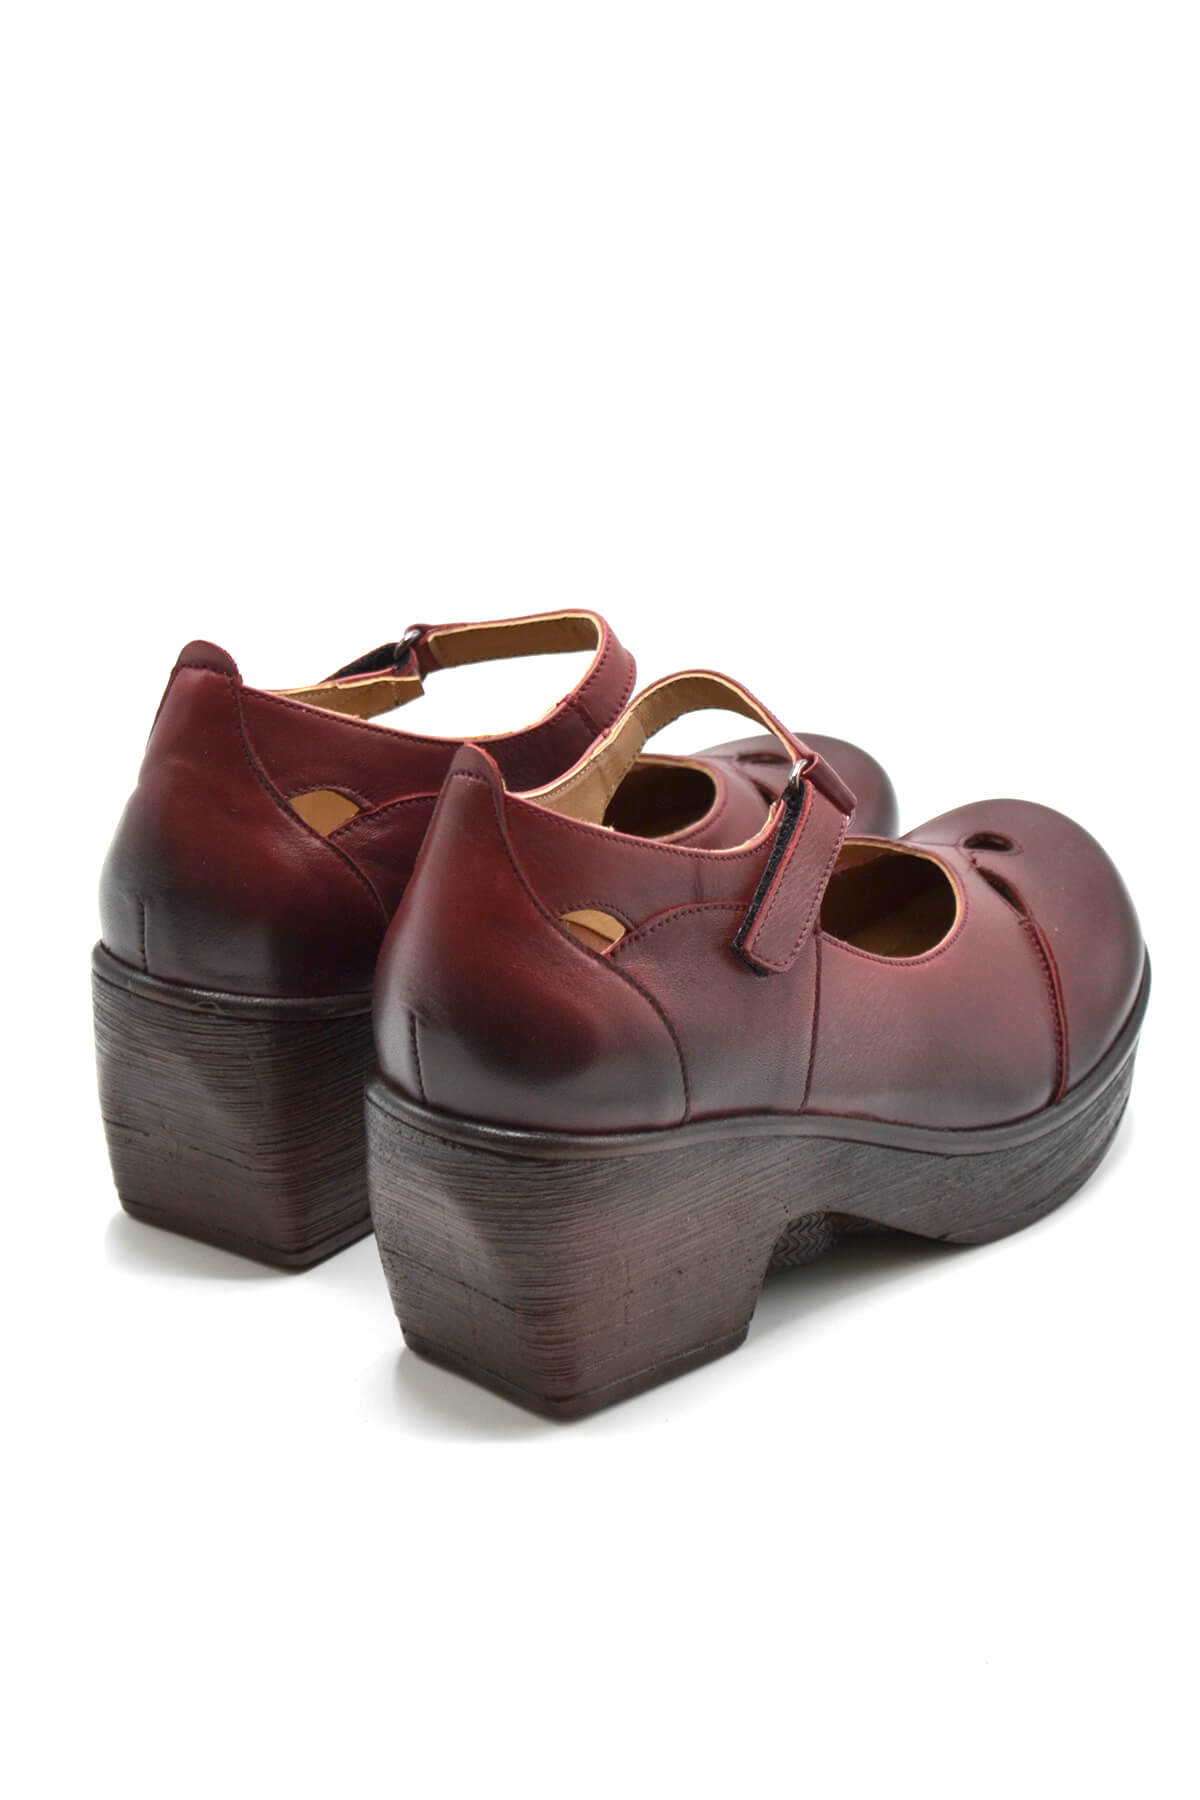 Kadın Apartman Topuk Deri Ayakkabı Dark Bordo 1912501